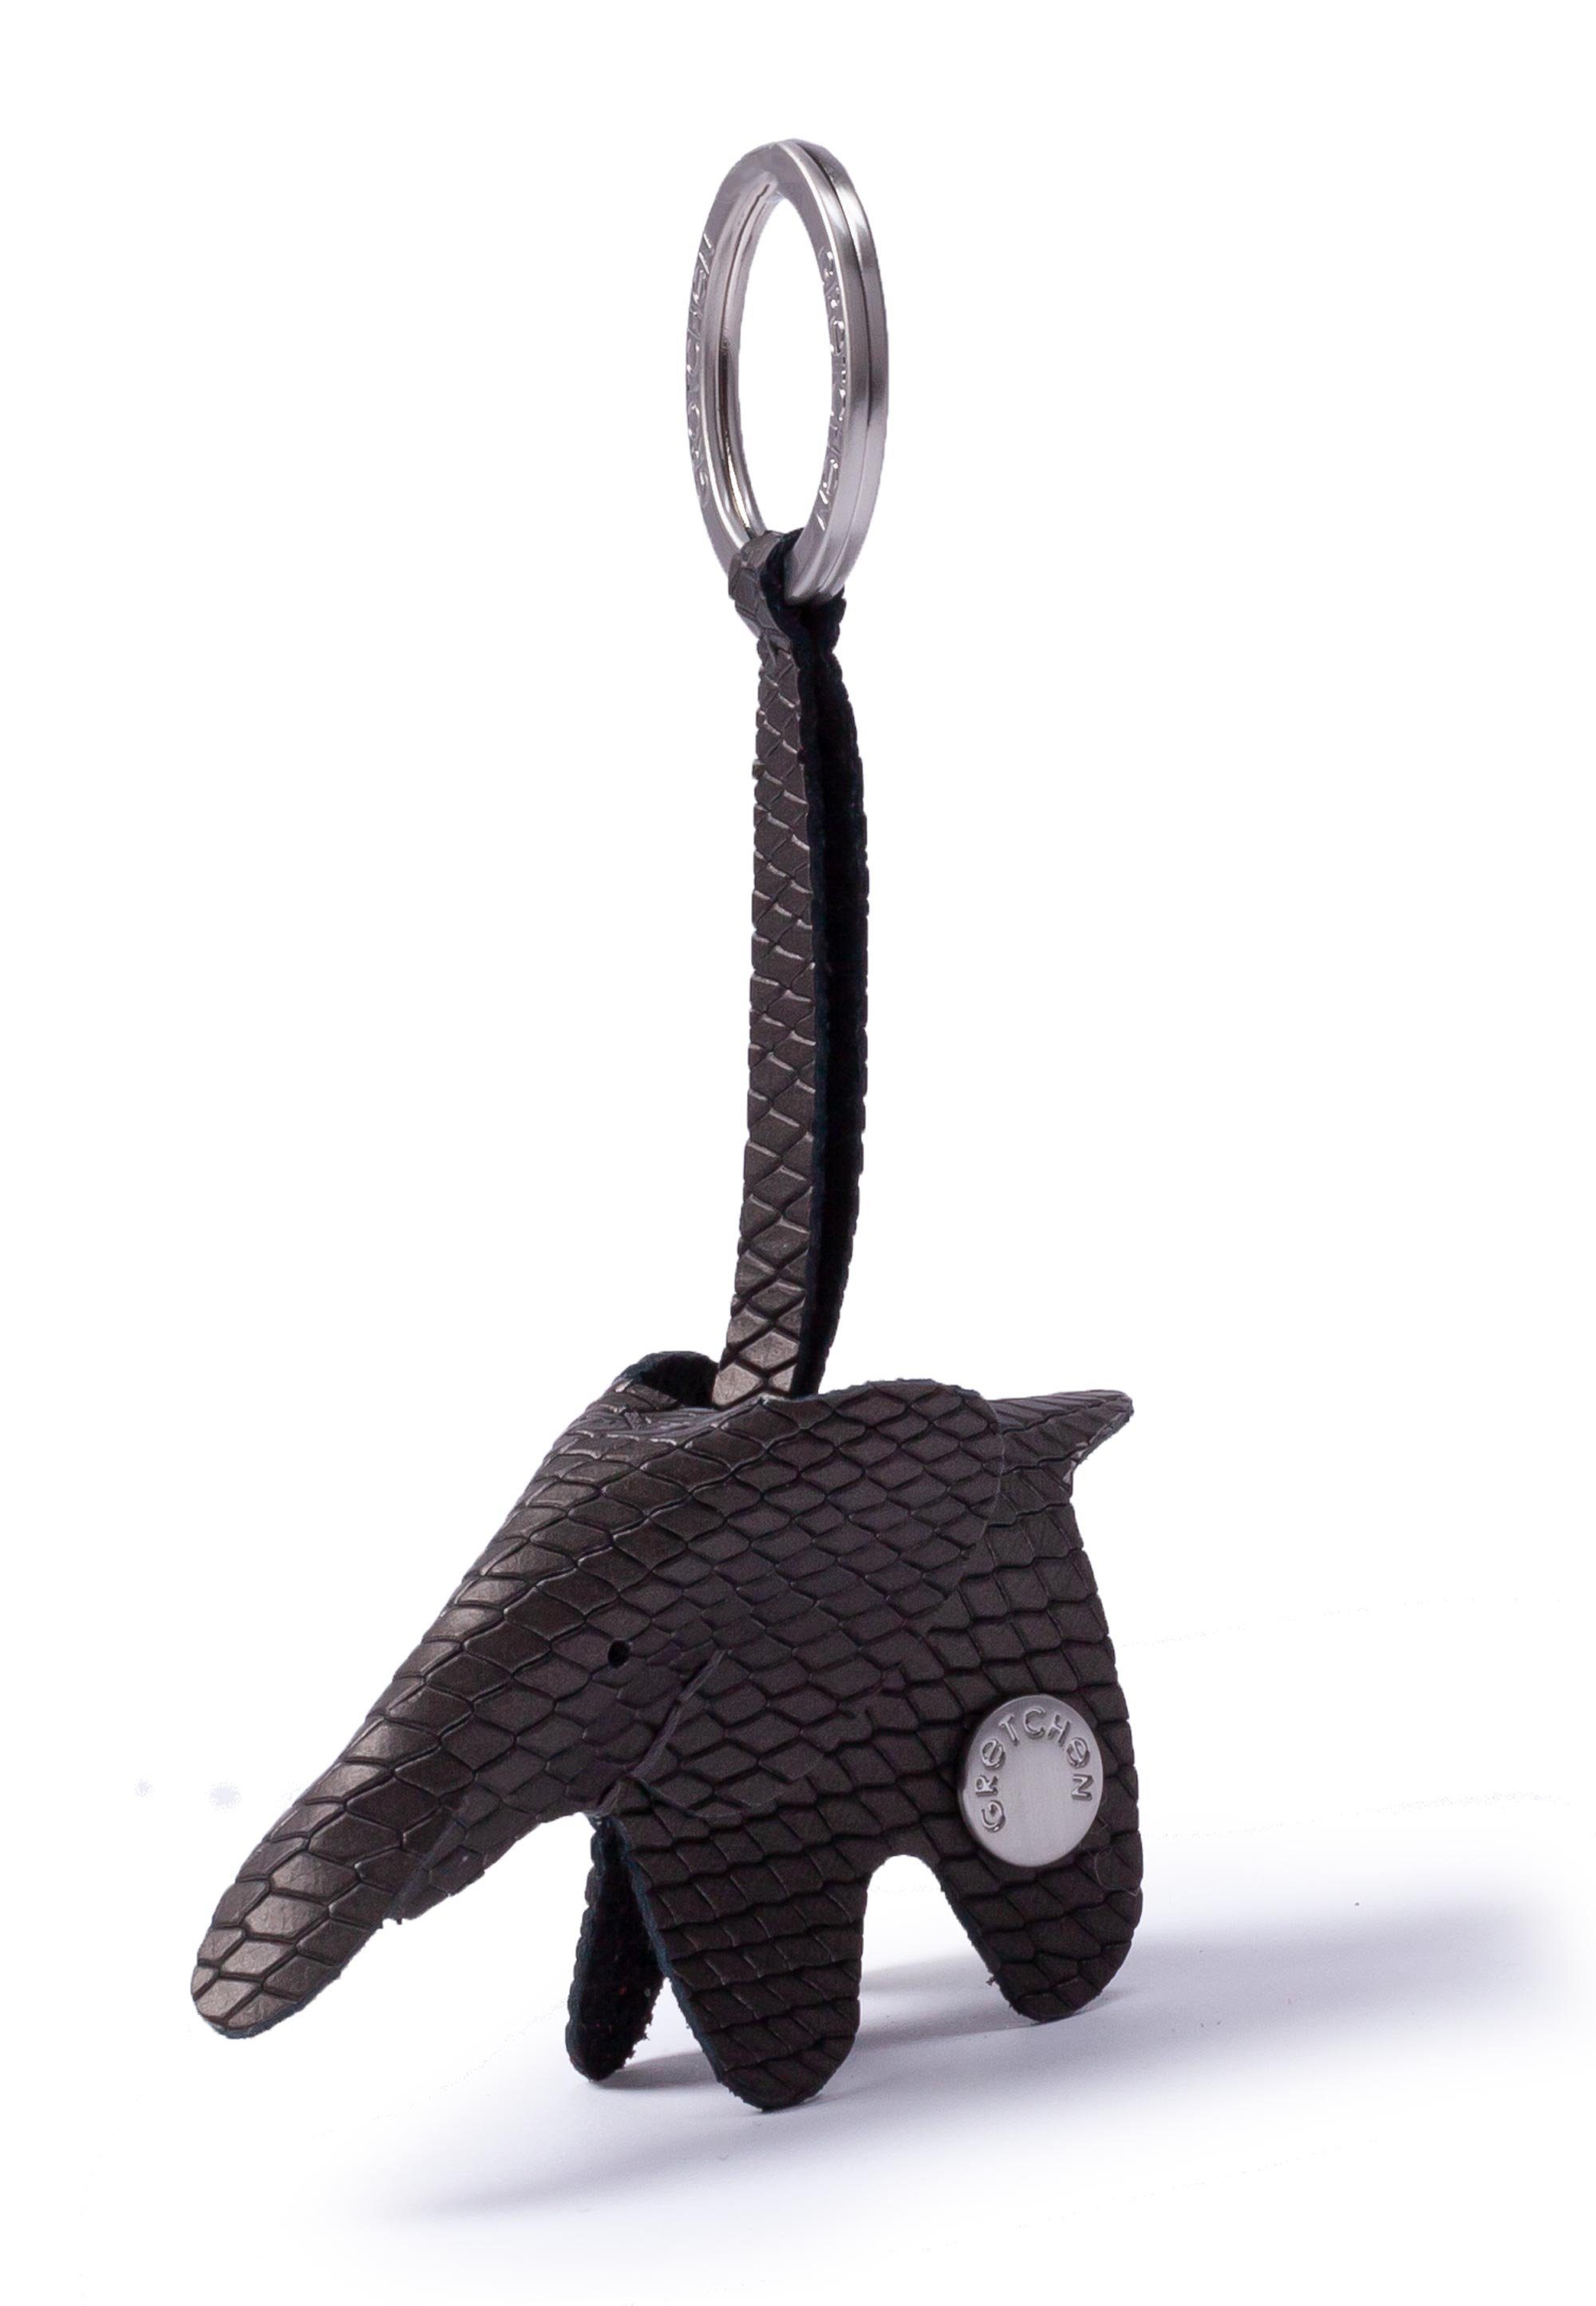 GRETCHEN Schlüsselanhänger Elephant, in Form eines Elefanten